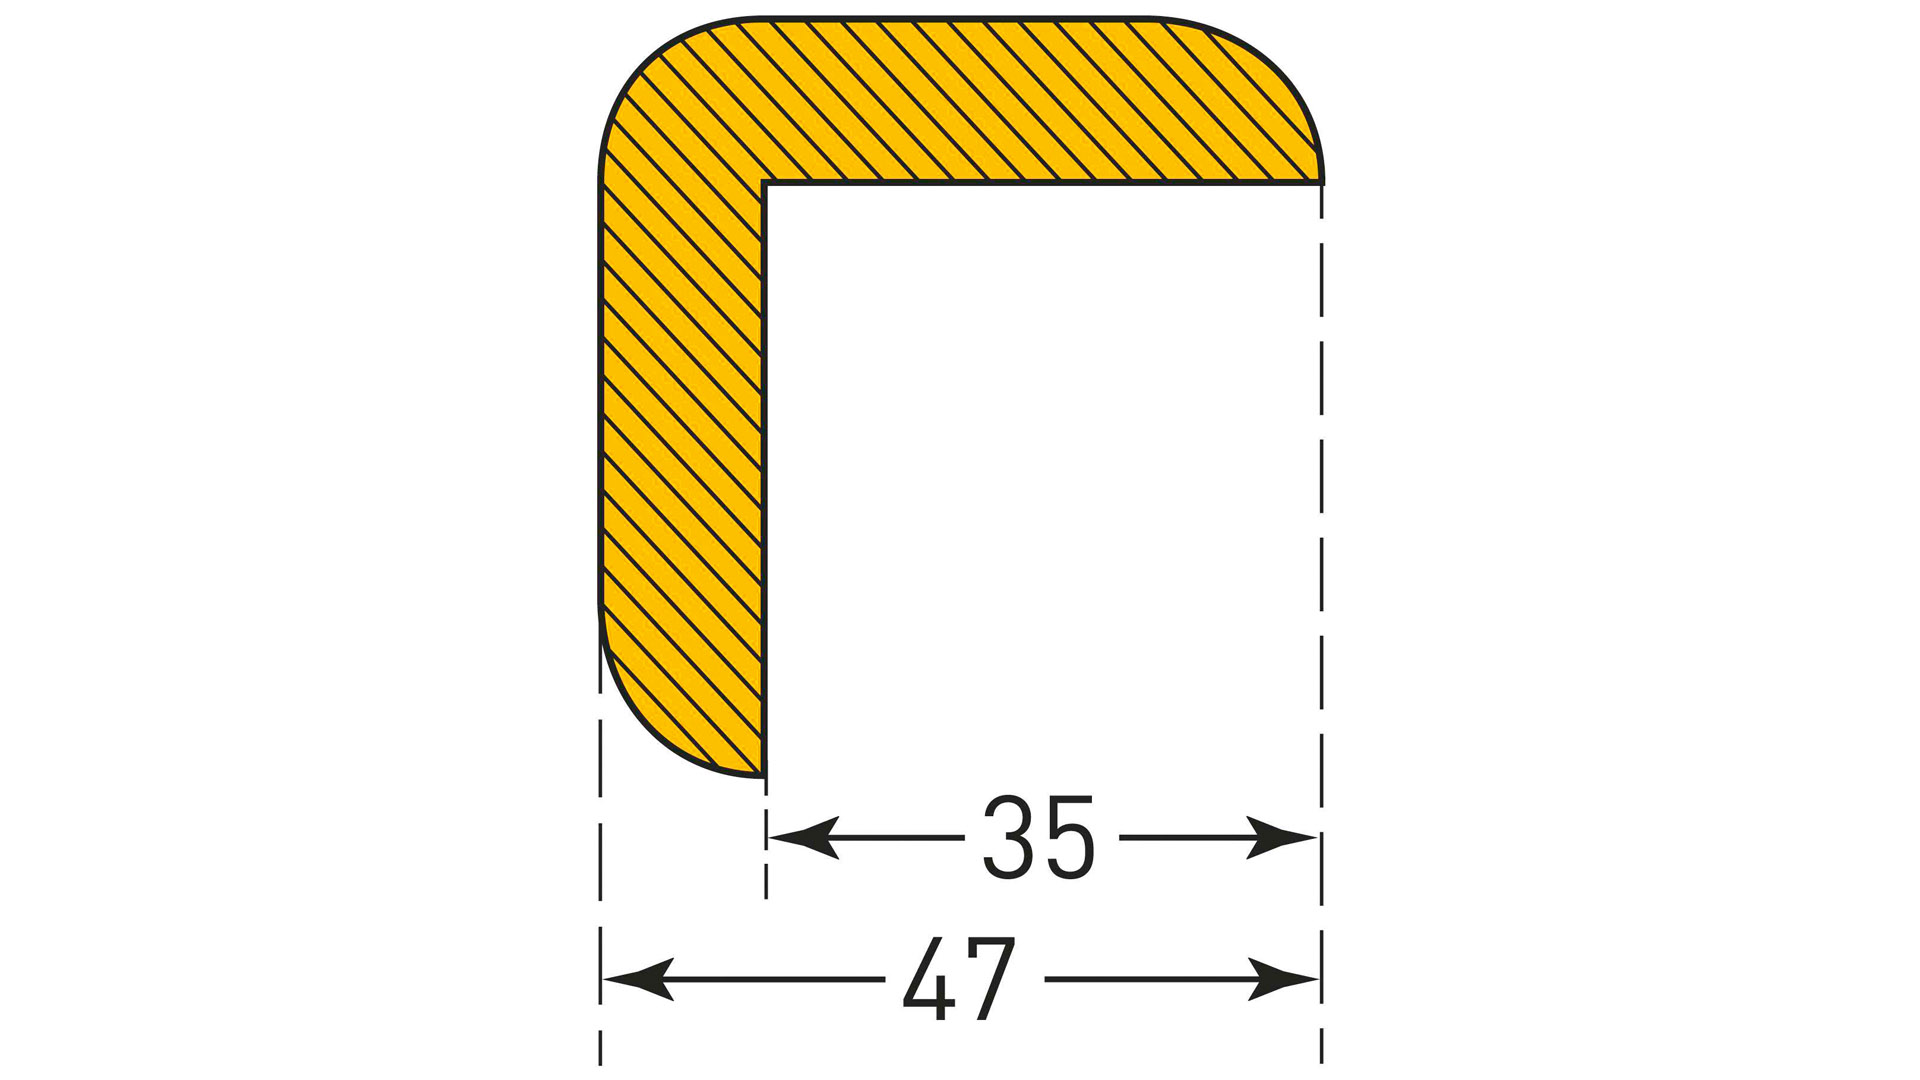 Prallschutz, Winkelform, Kantenschutz 35x47 mm, Länge 1000 mm gelb/schwarz, selbstklebend